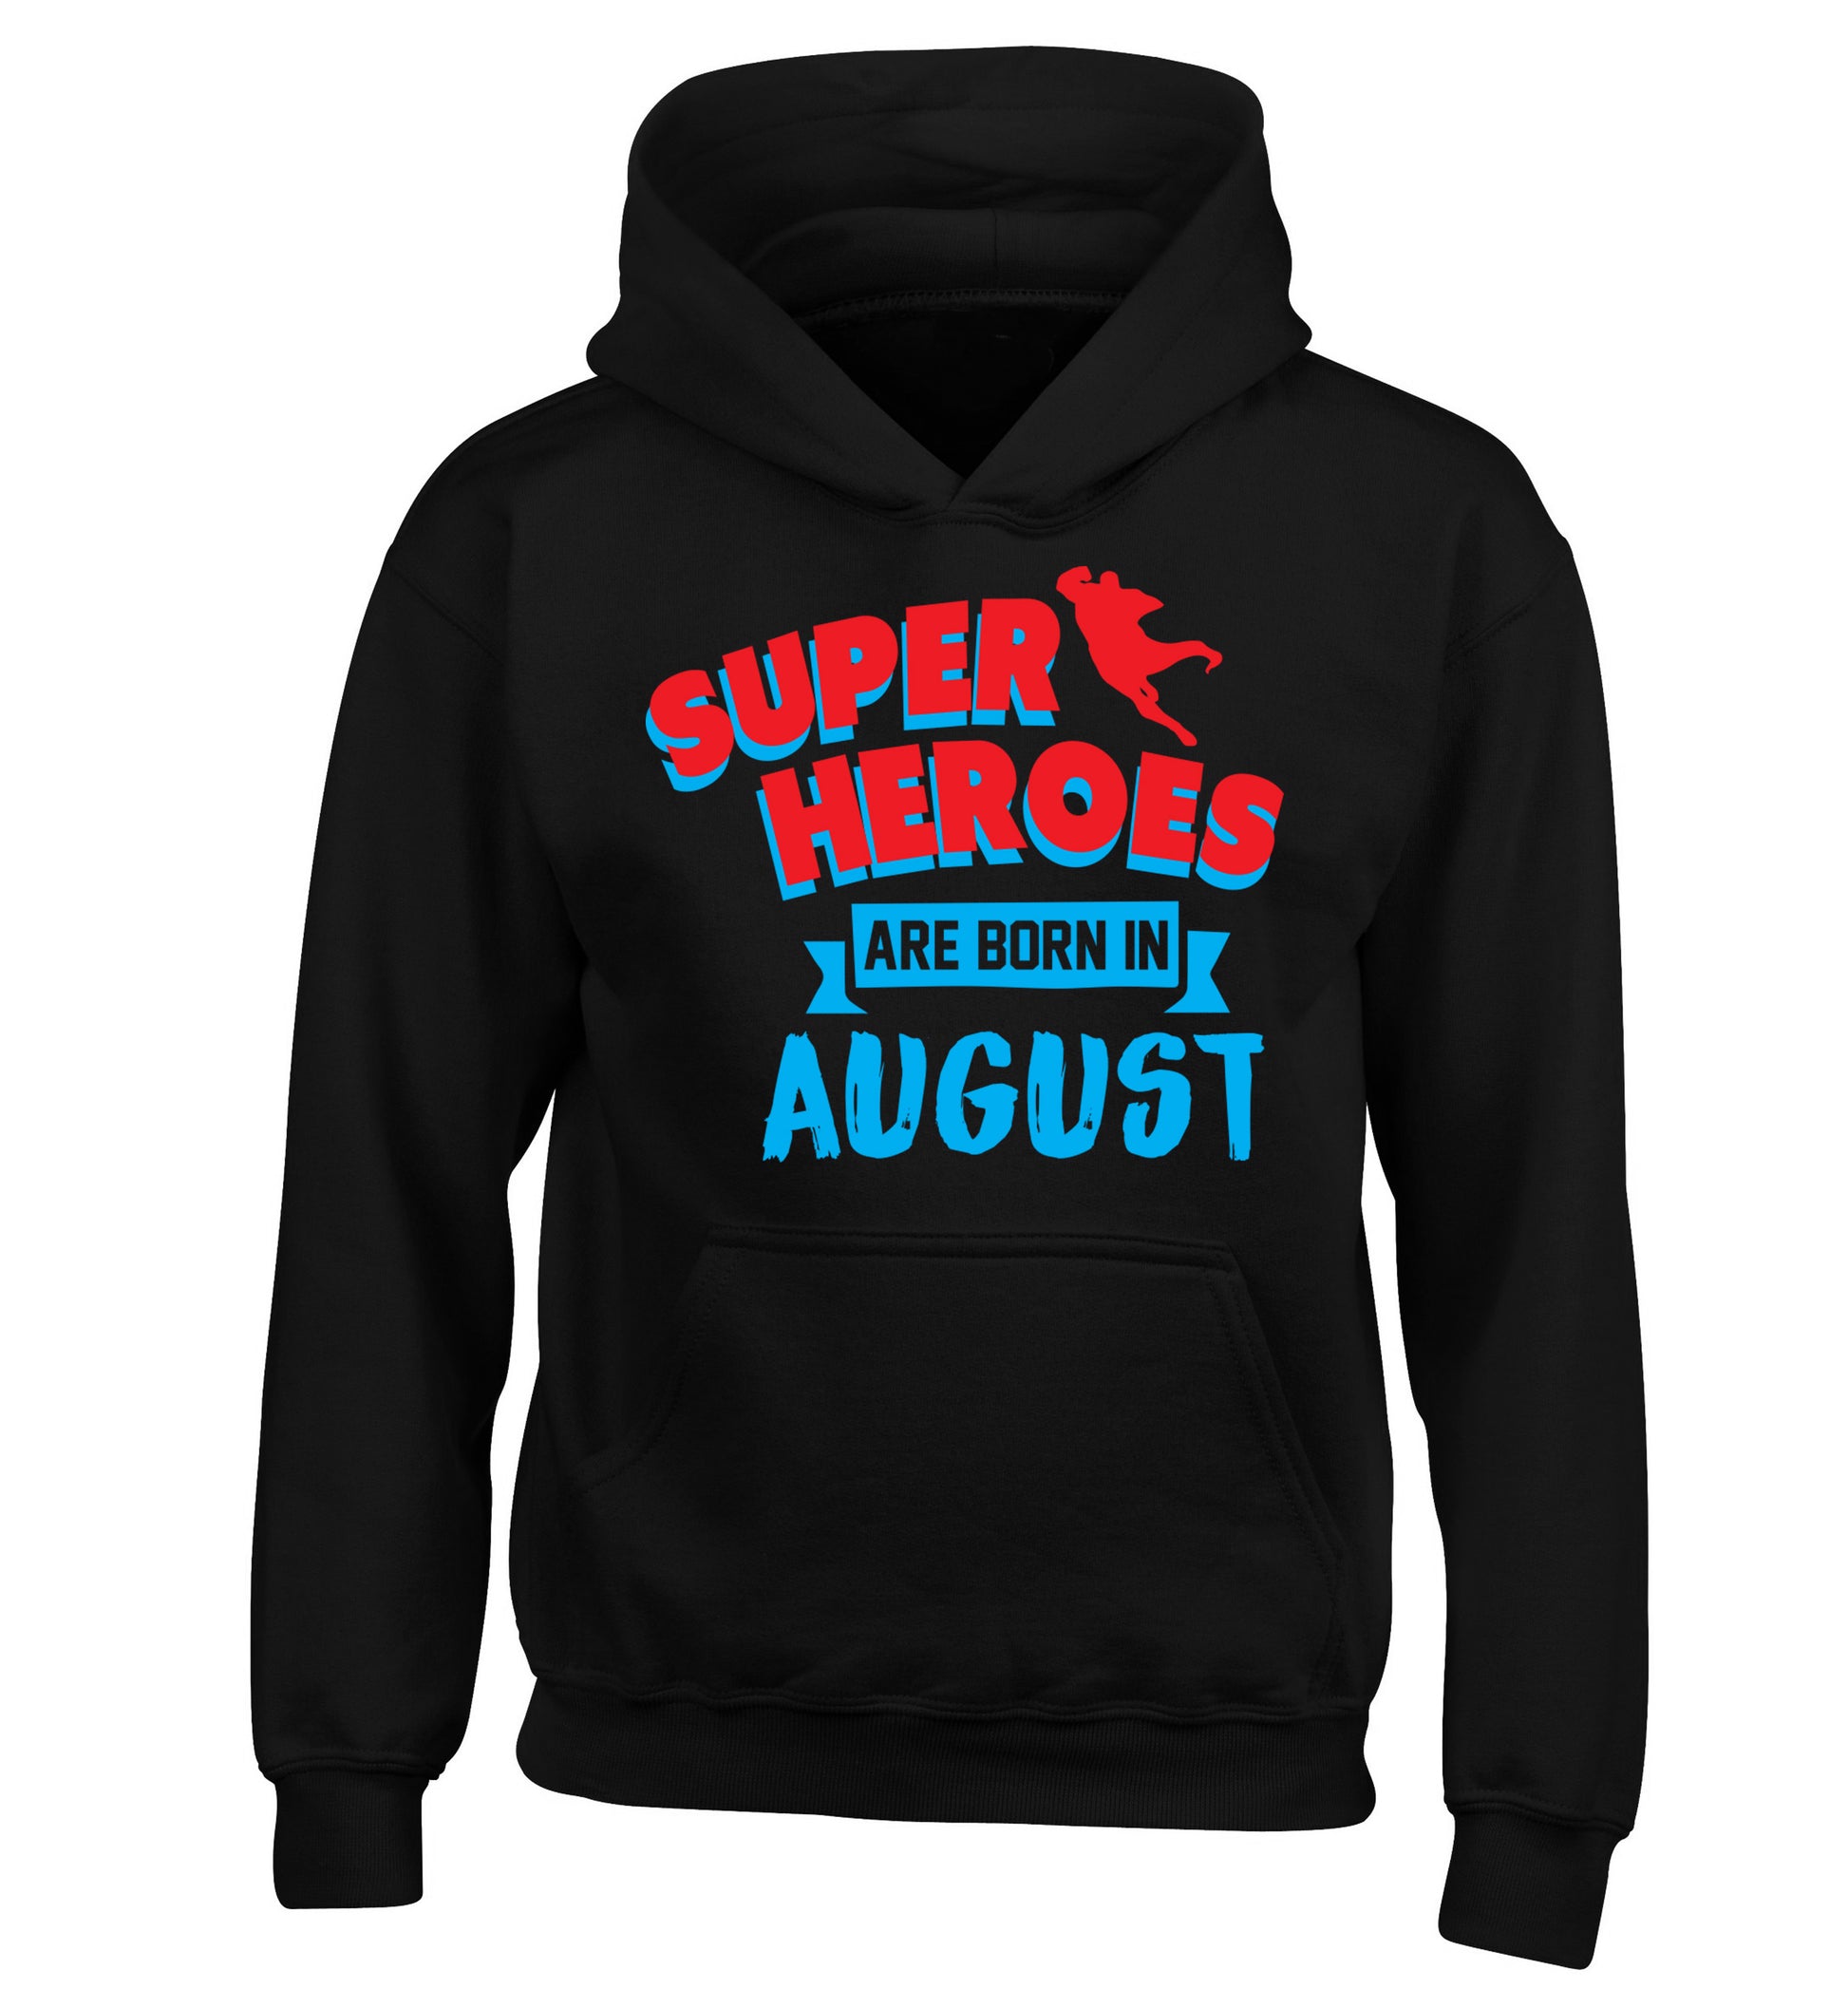 Superheroes are born in August children's black hoodie 12-13 Years